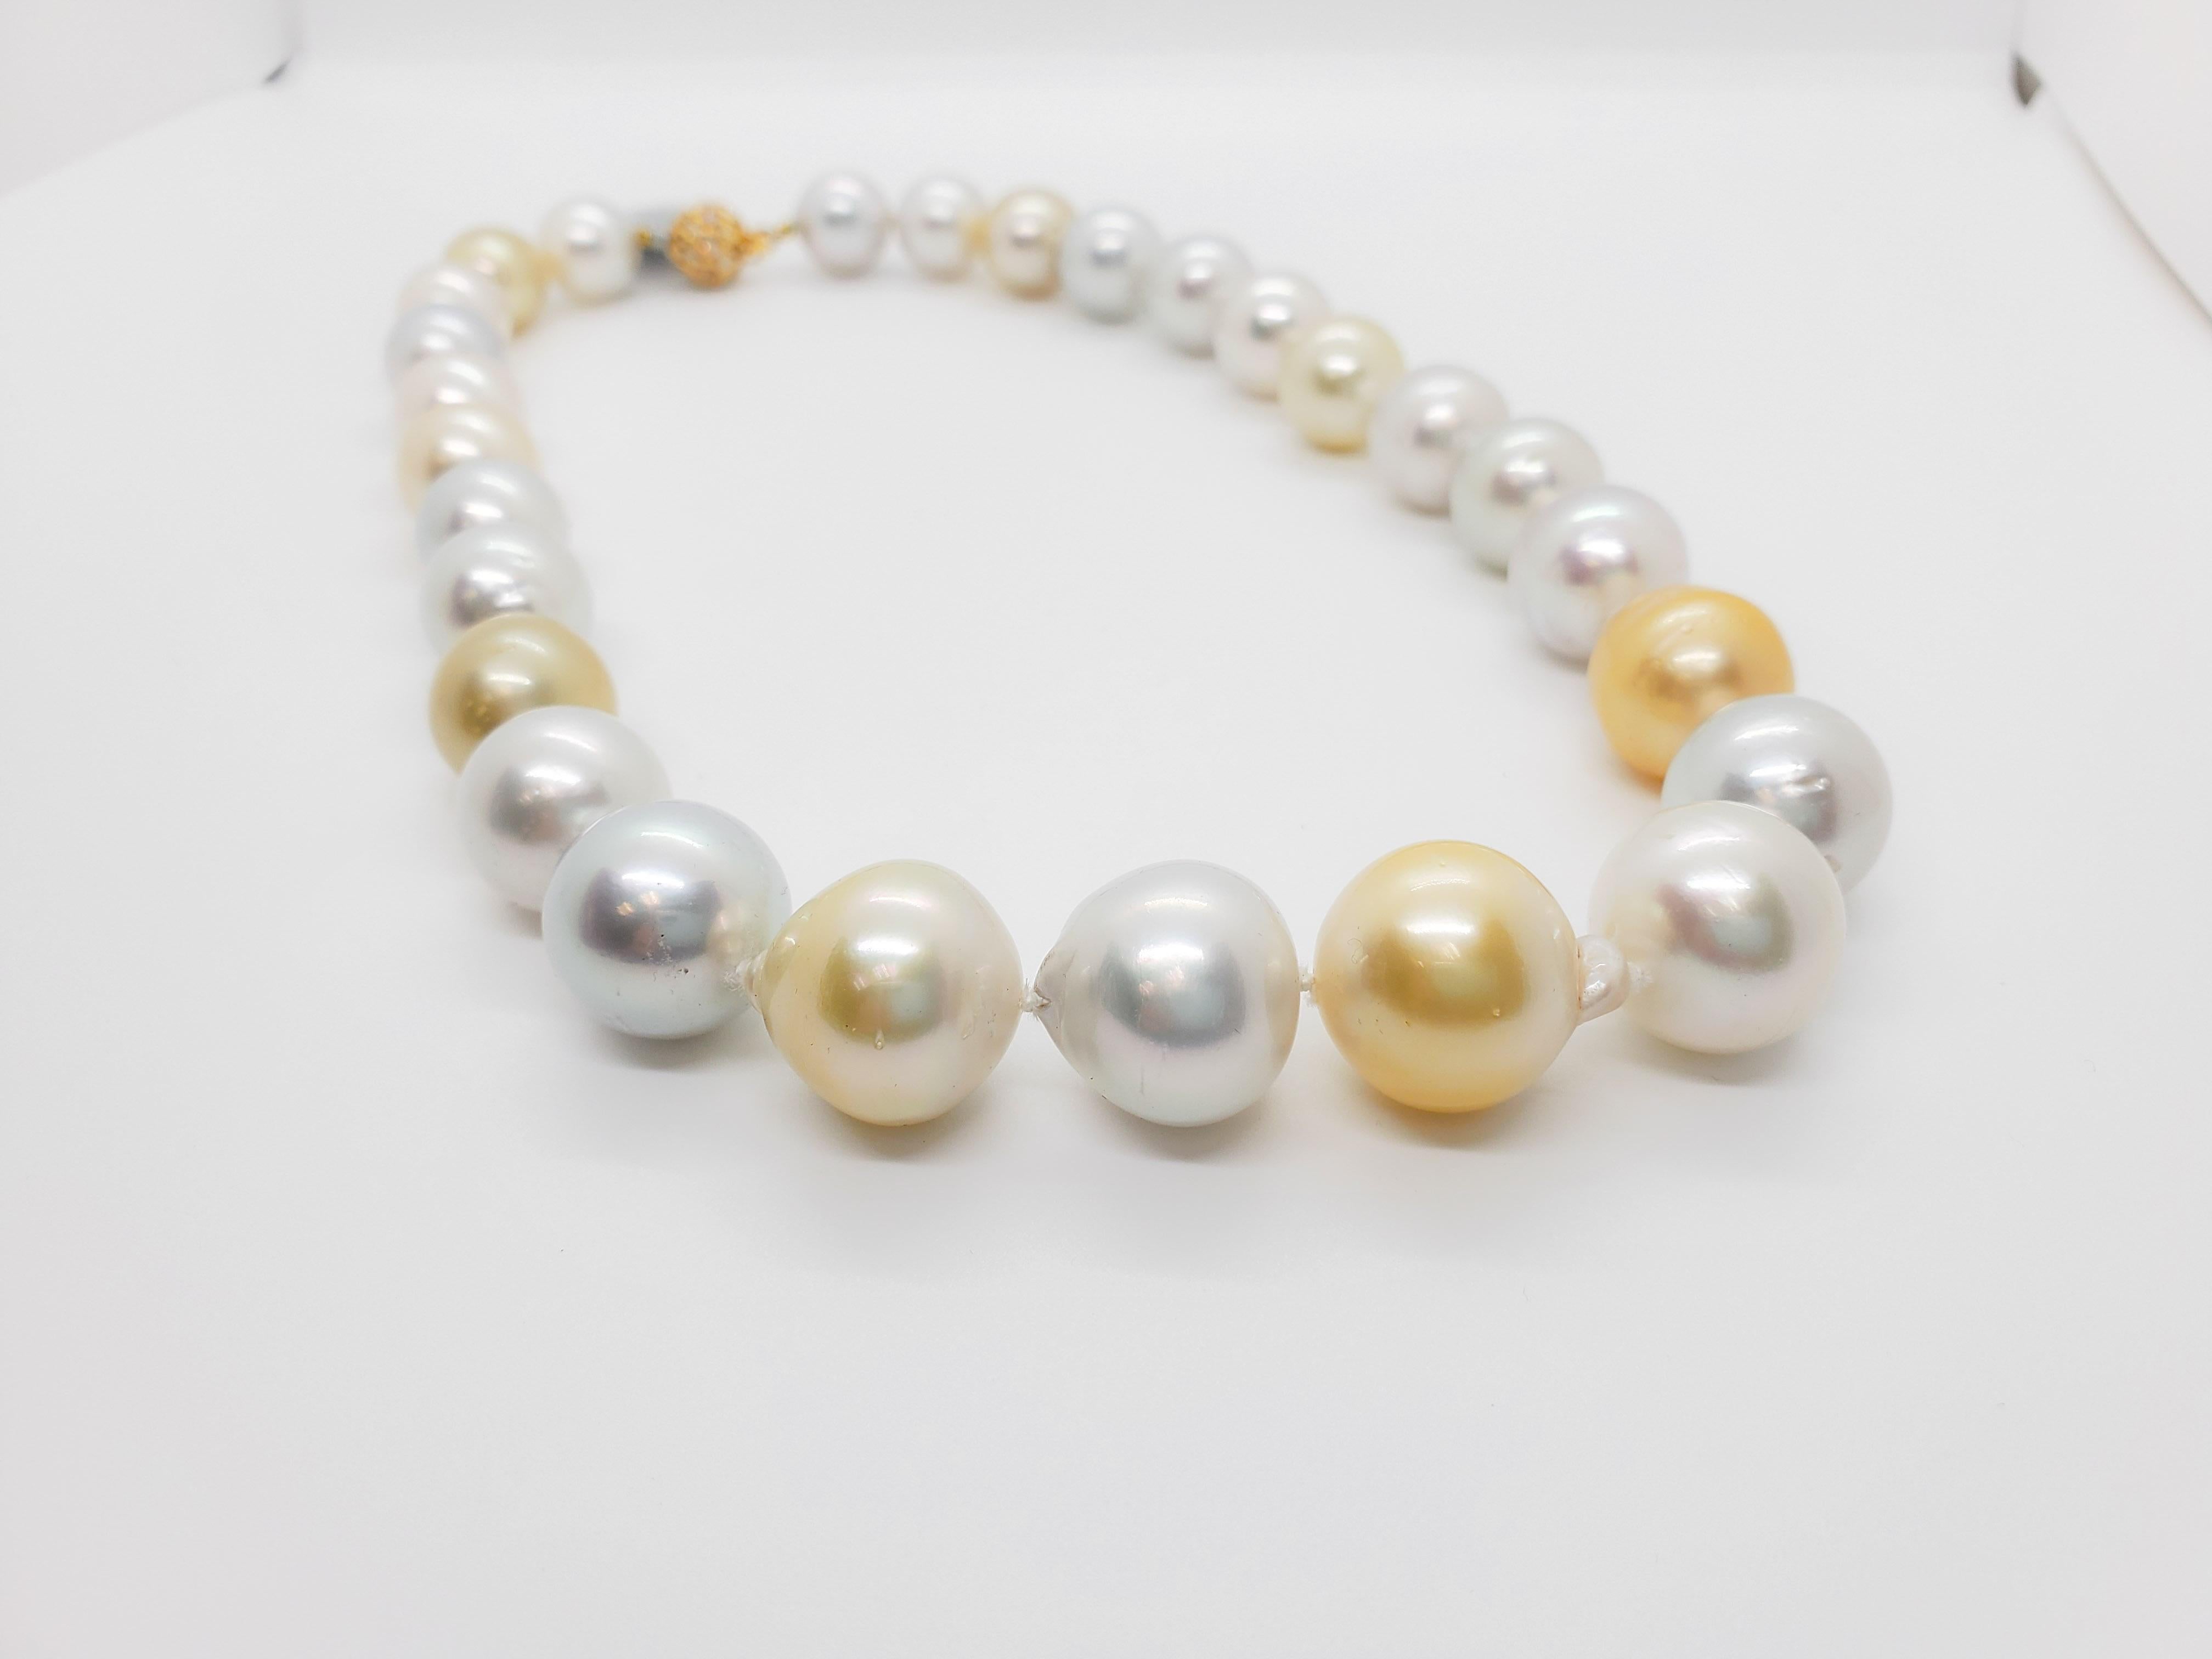 Magnifique collier mettant en valeur 27 perles blanches et jaunes des mers du Sud et 0,50 ct. de diamants blancs ronds dans un fermoir en or jaune 18k.  Superbe éclat et peu ou pas d'imperfections. L'alternance de perles blanches et jaunes rend ce